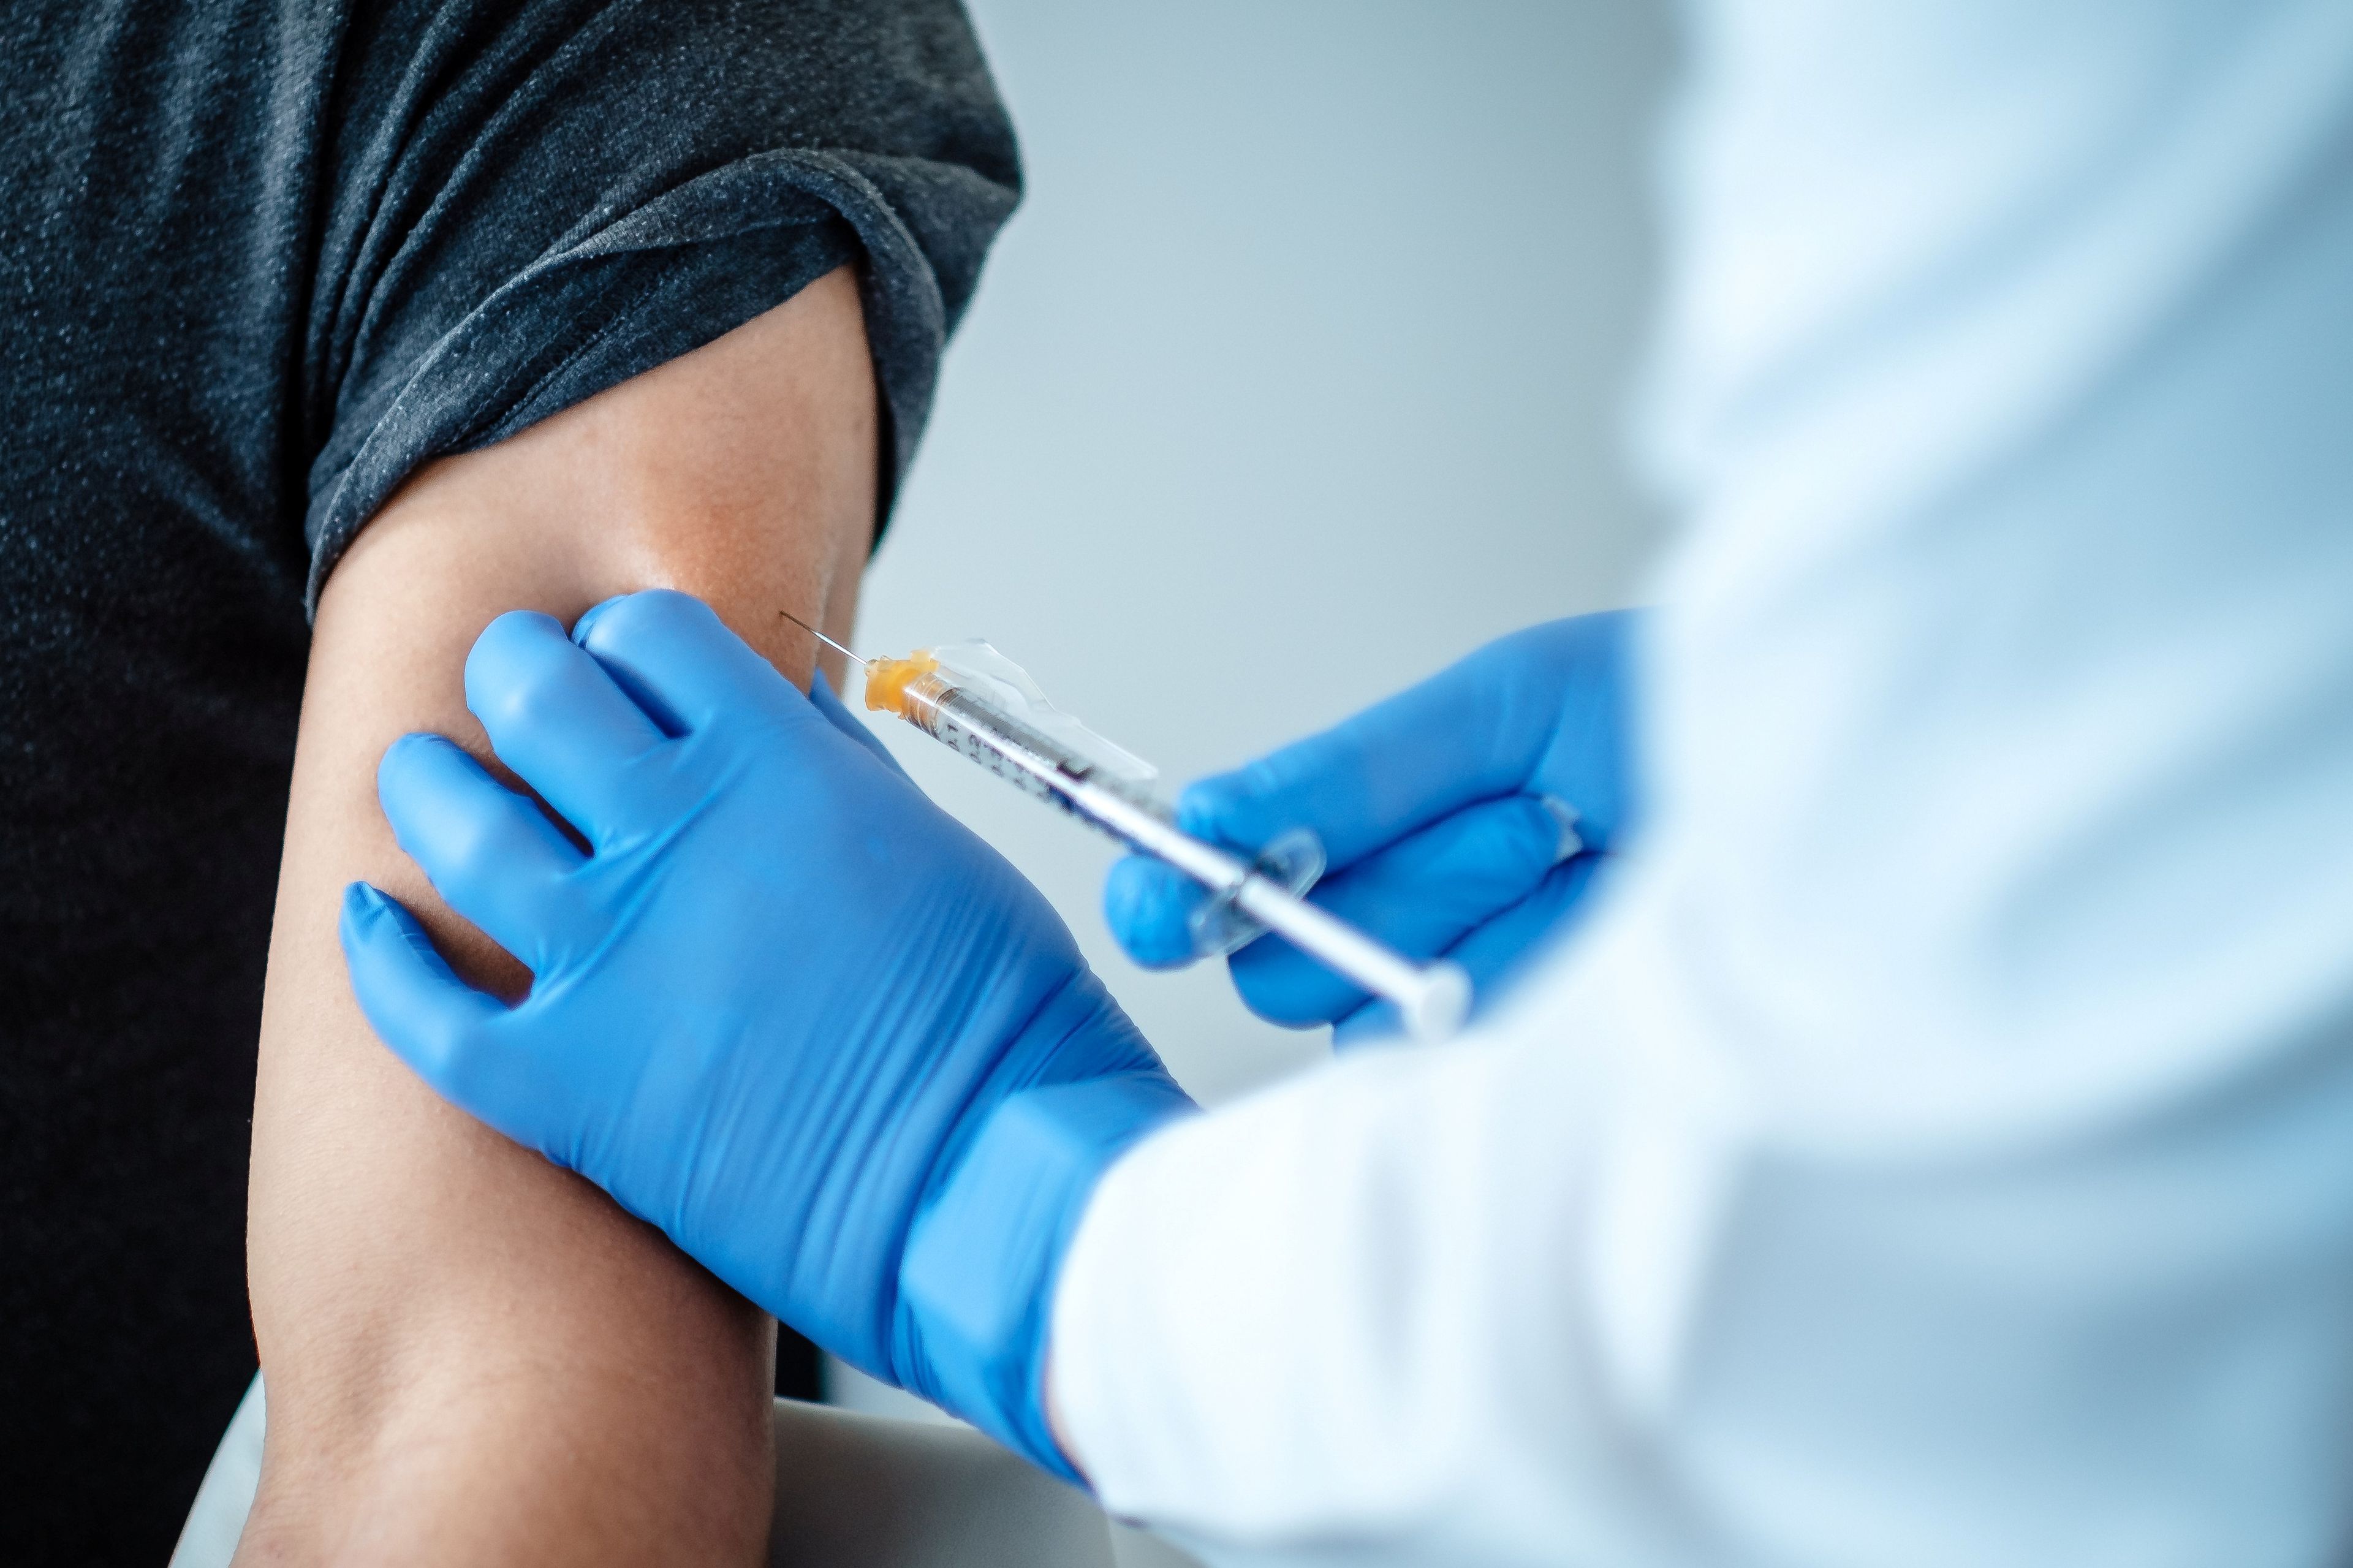 Un voluntario recibe una dosis de la vacuna de Pfizer y BioNTech contra el coronavirus durante los ensayos clínicos